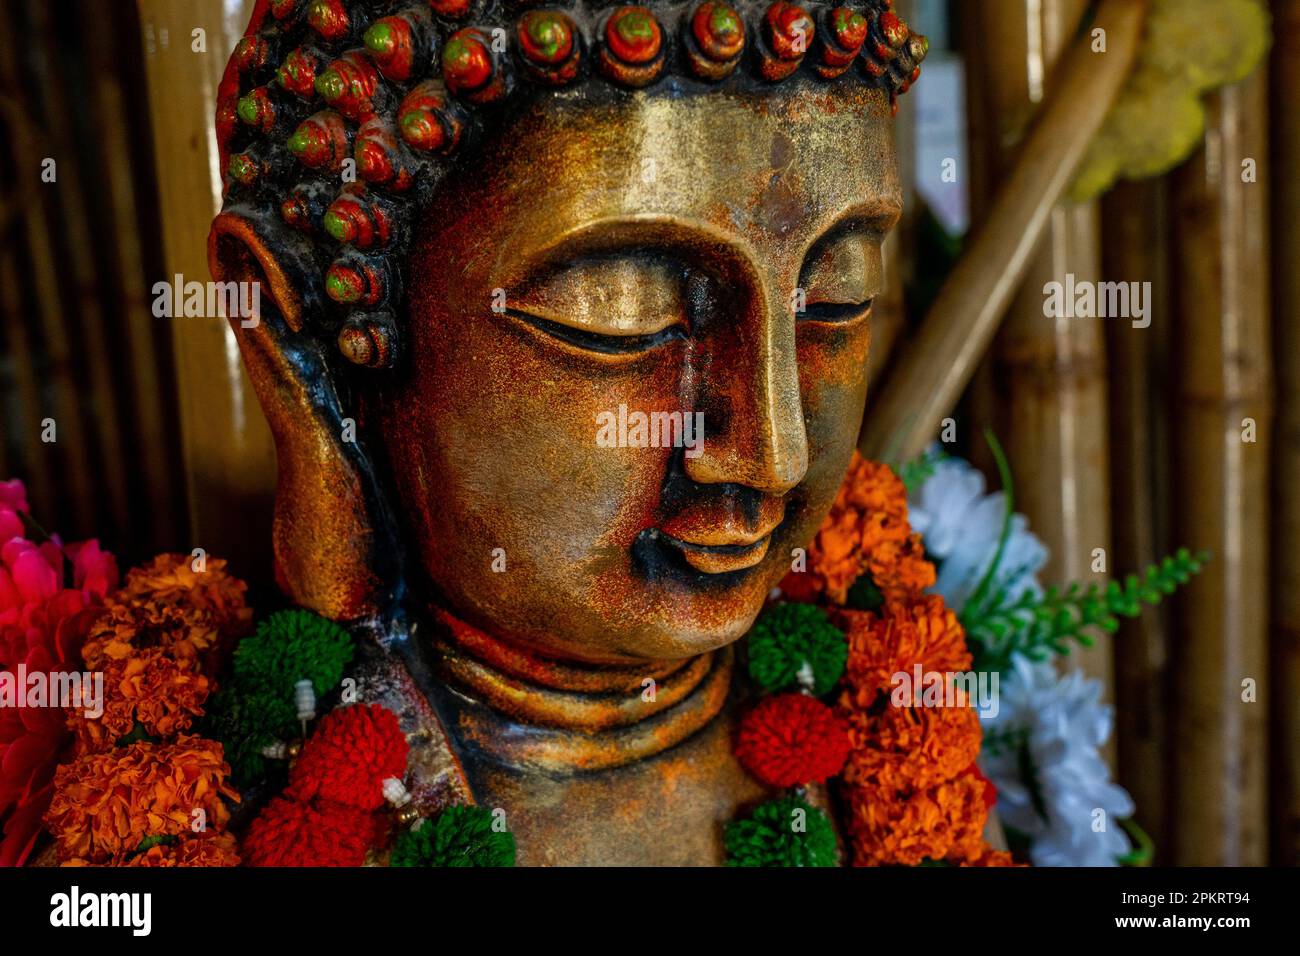 Nahaufnahme der bronzenen buddha-Statue, die in Meditation mit Blumendekorationen für die Festivalzeremonie sitzt. Hochwertiges Foto Stockfoto